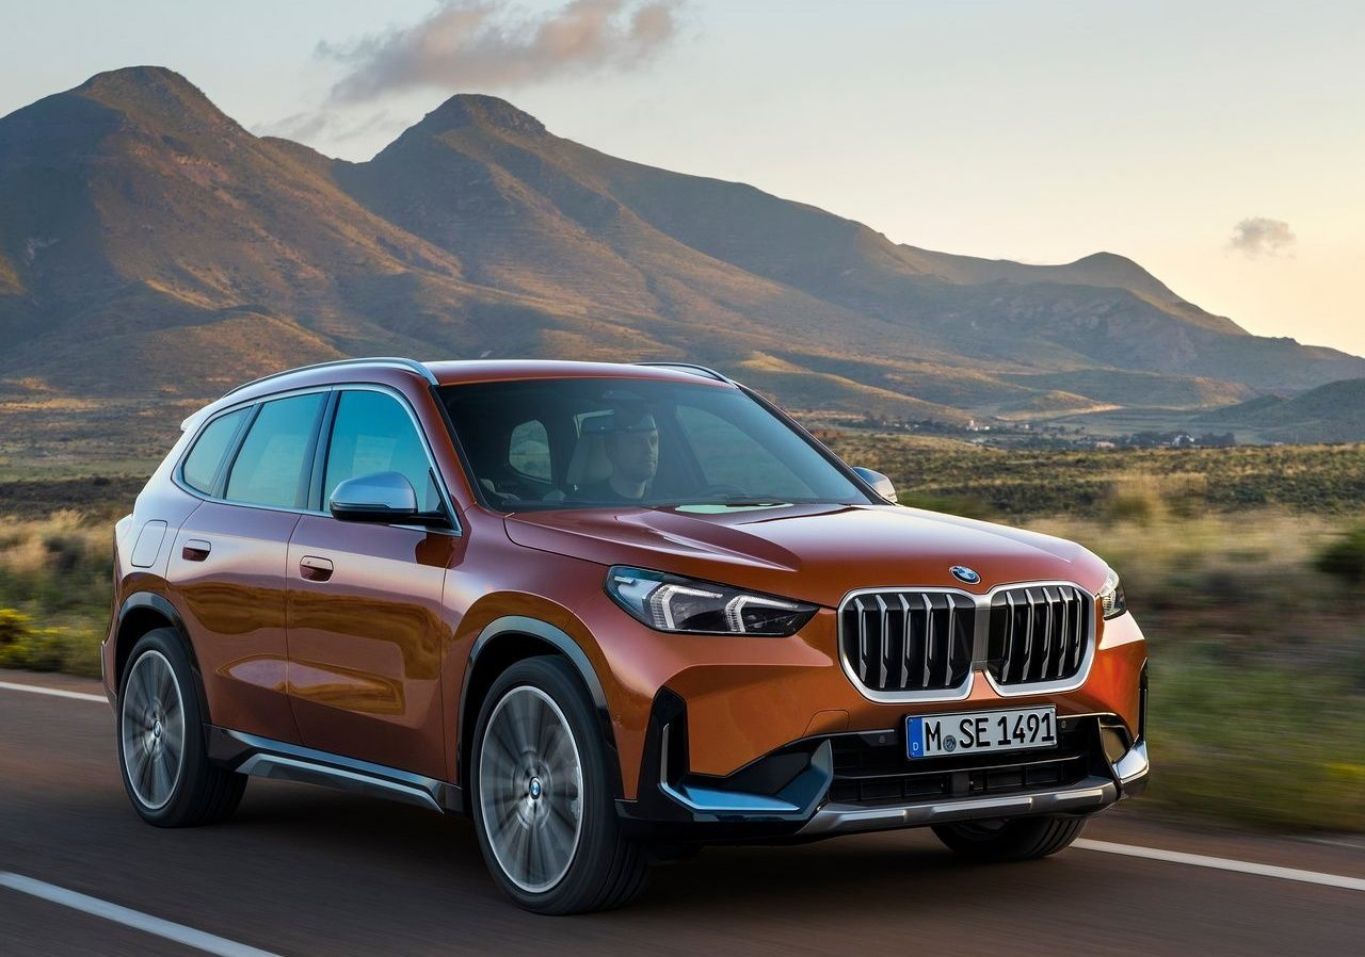 De pré-venda na Haus Fortaleza, Novo BMW X1 já agita o mercado e a curiosidade